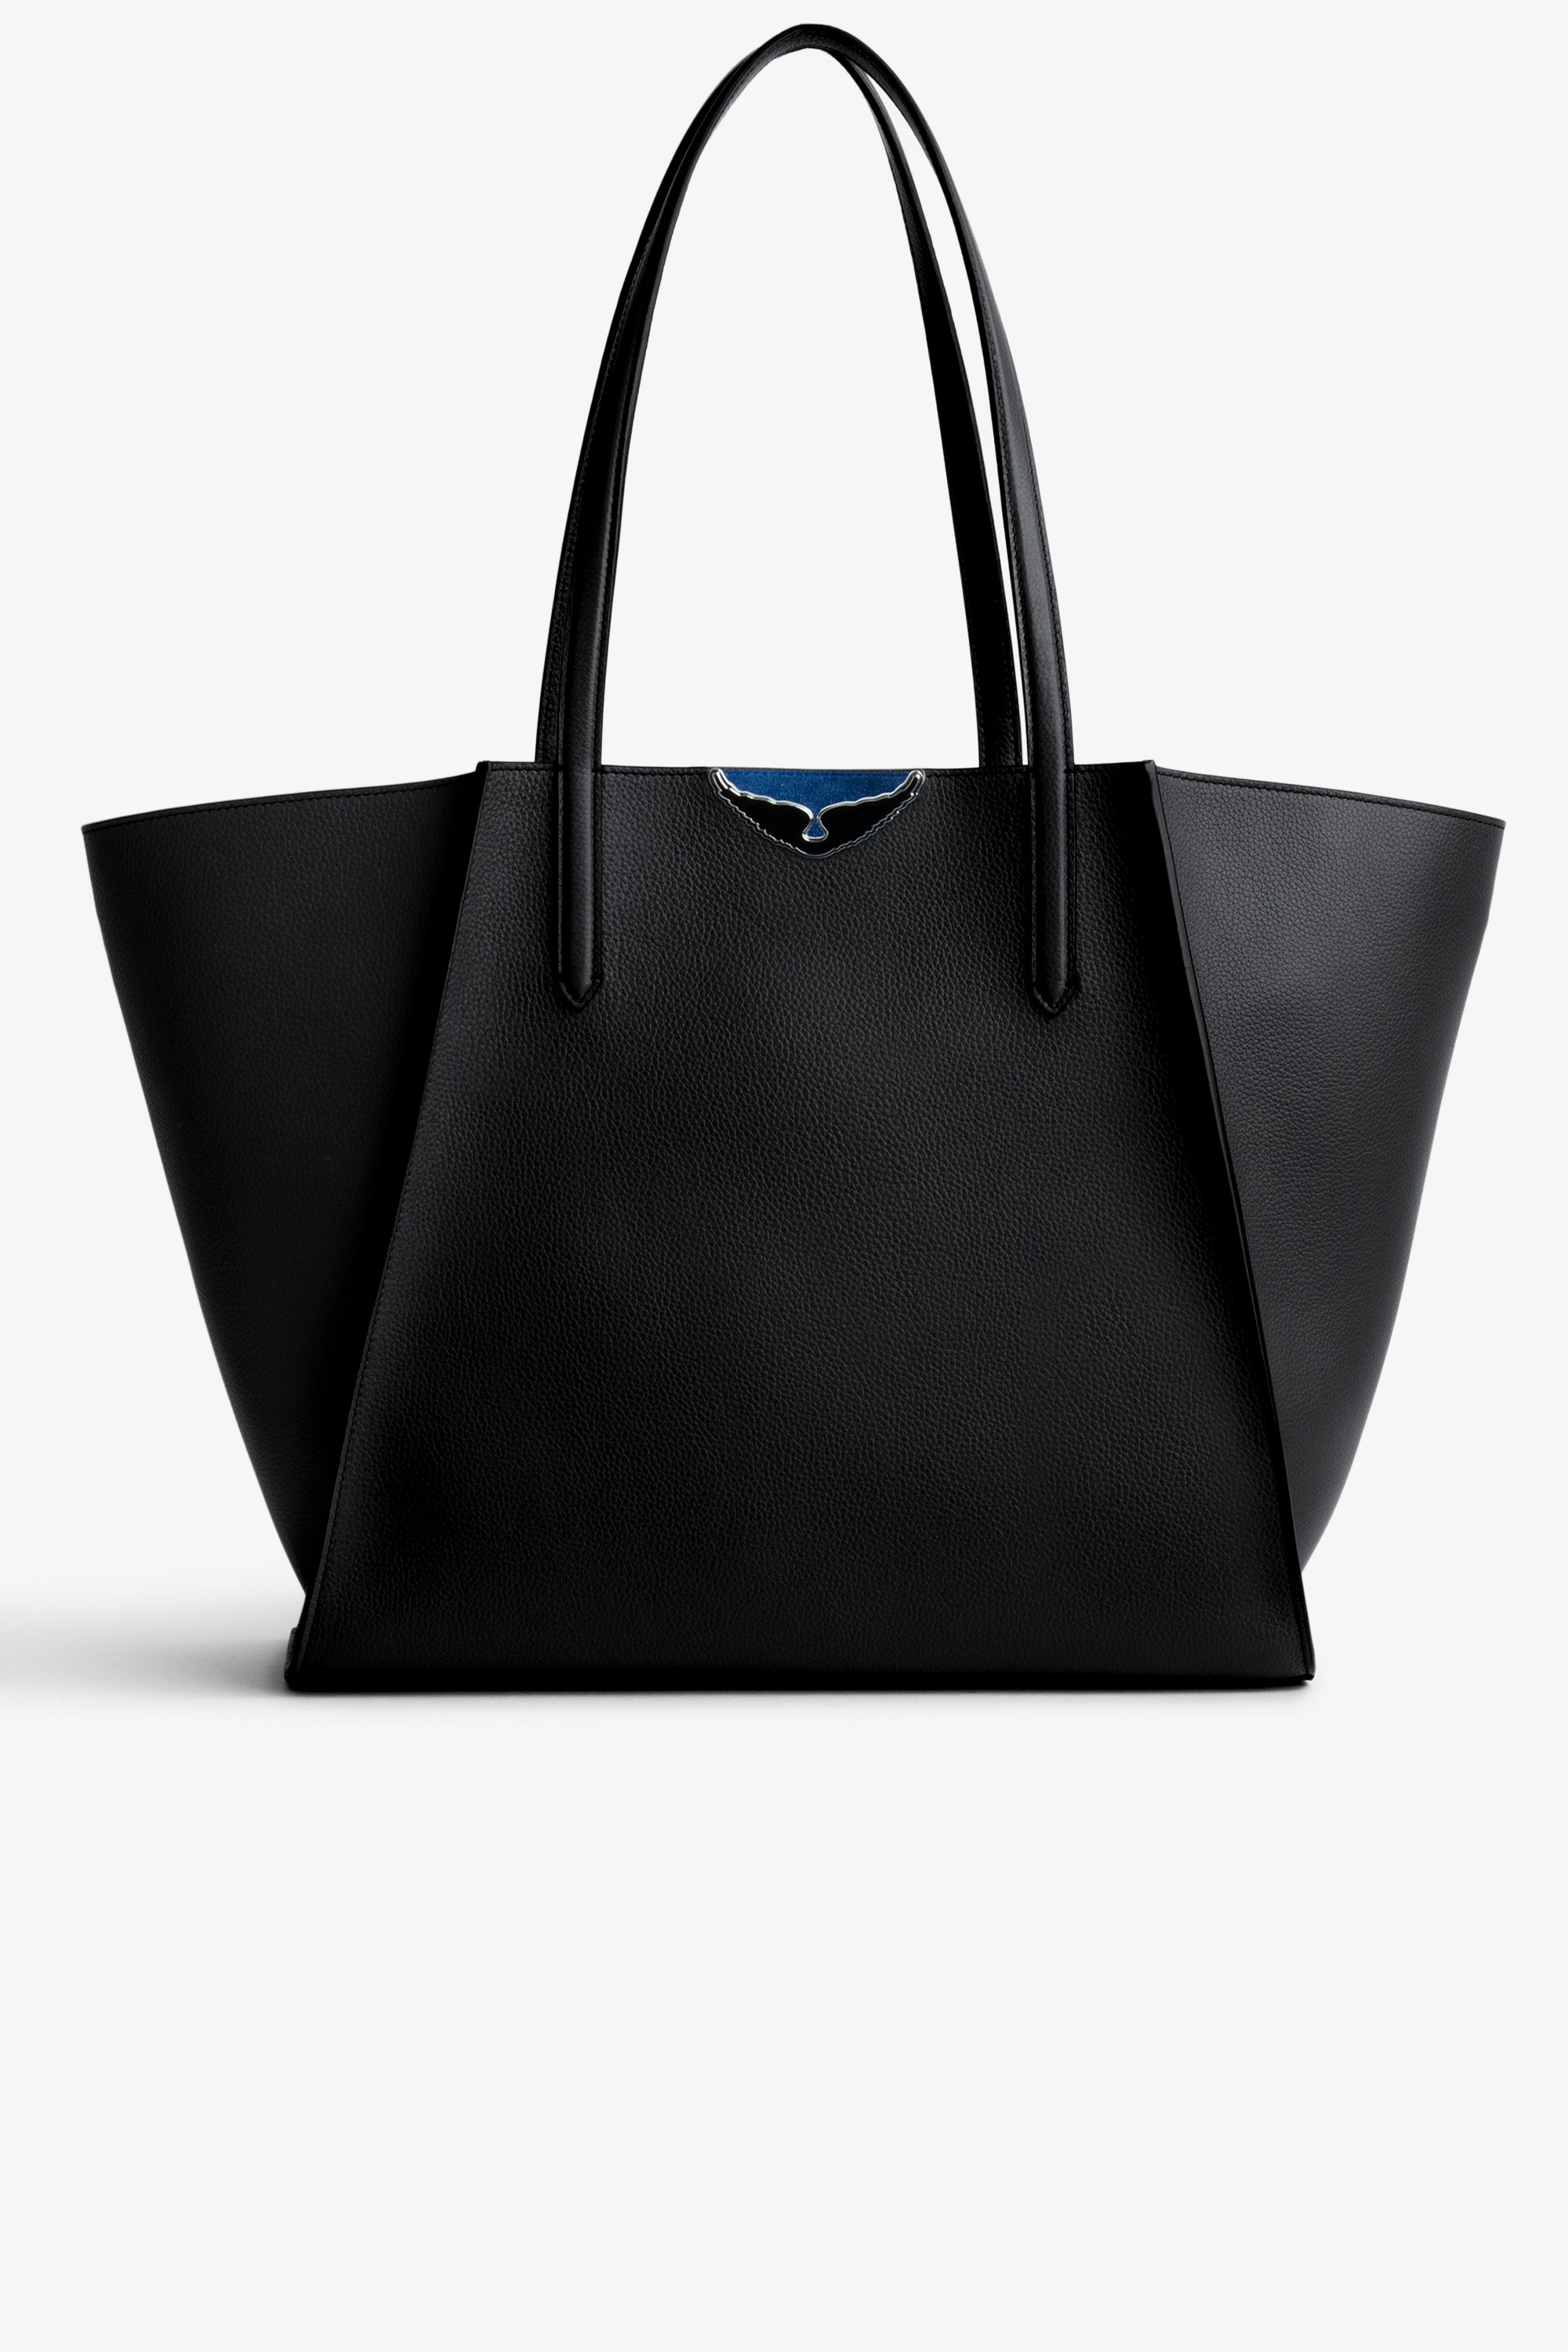 Tasche Le Borderline - Damen-Shopper zum Wenden aus schwarzem, genarbtem Leder und blauem Veloursleder mit schwarz lackierten Flügeln